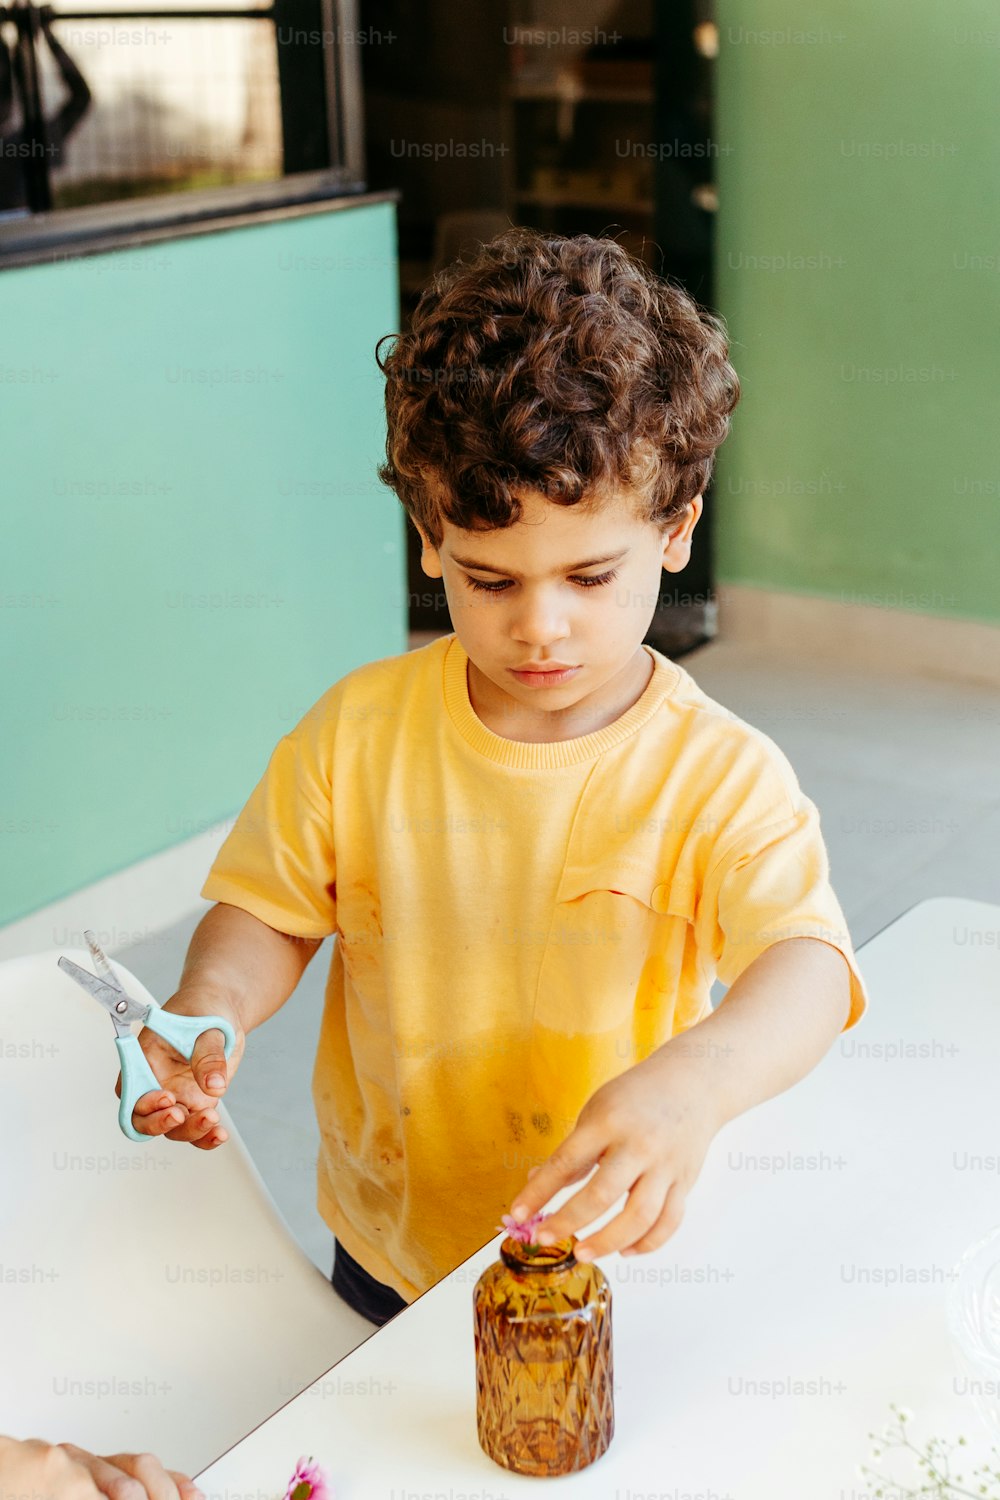 Un niño cortando un pedazo de pastel con un par de tijeras